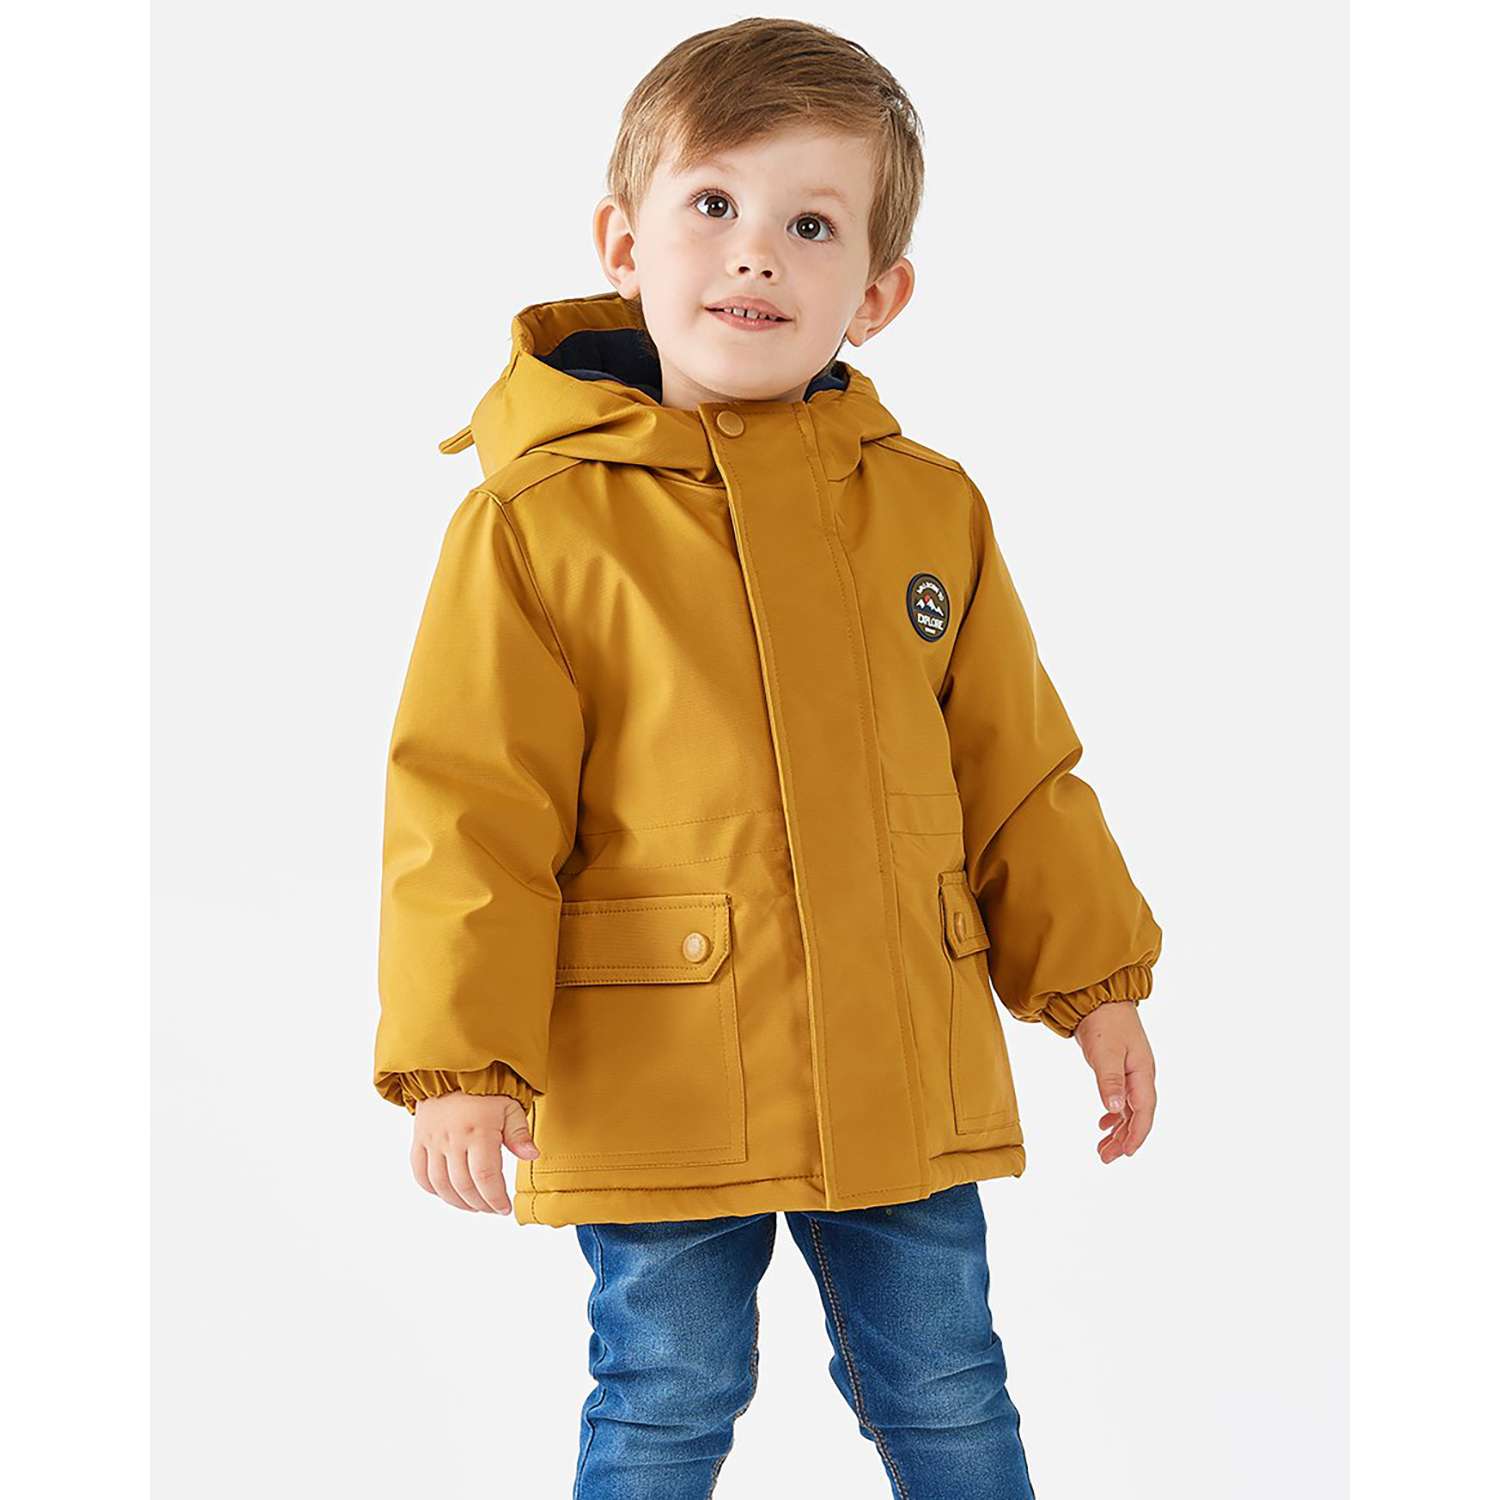 Куртка беби гоу. Куртка для мальчика Беби гоу горчичная. Куртка Baby go на мальчика желтая. BABYGO куртка горчичневая. Куртка для мальчика демисезонная Baby go горчичная.